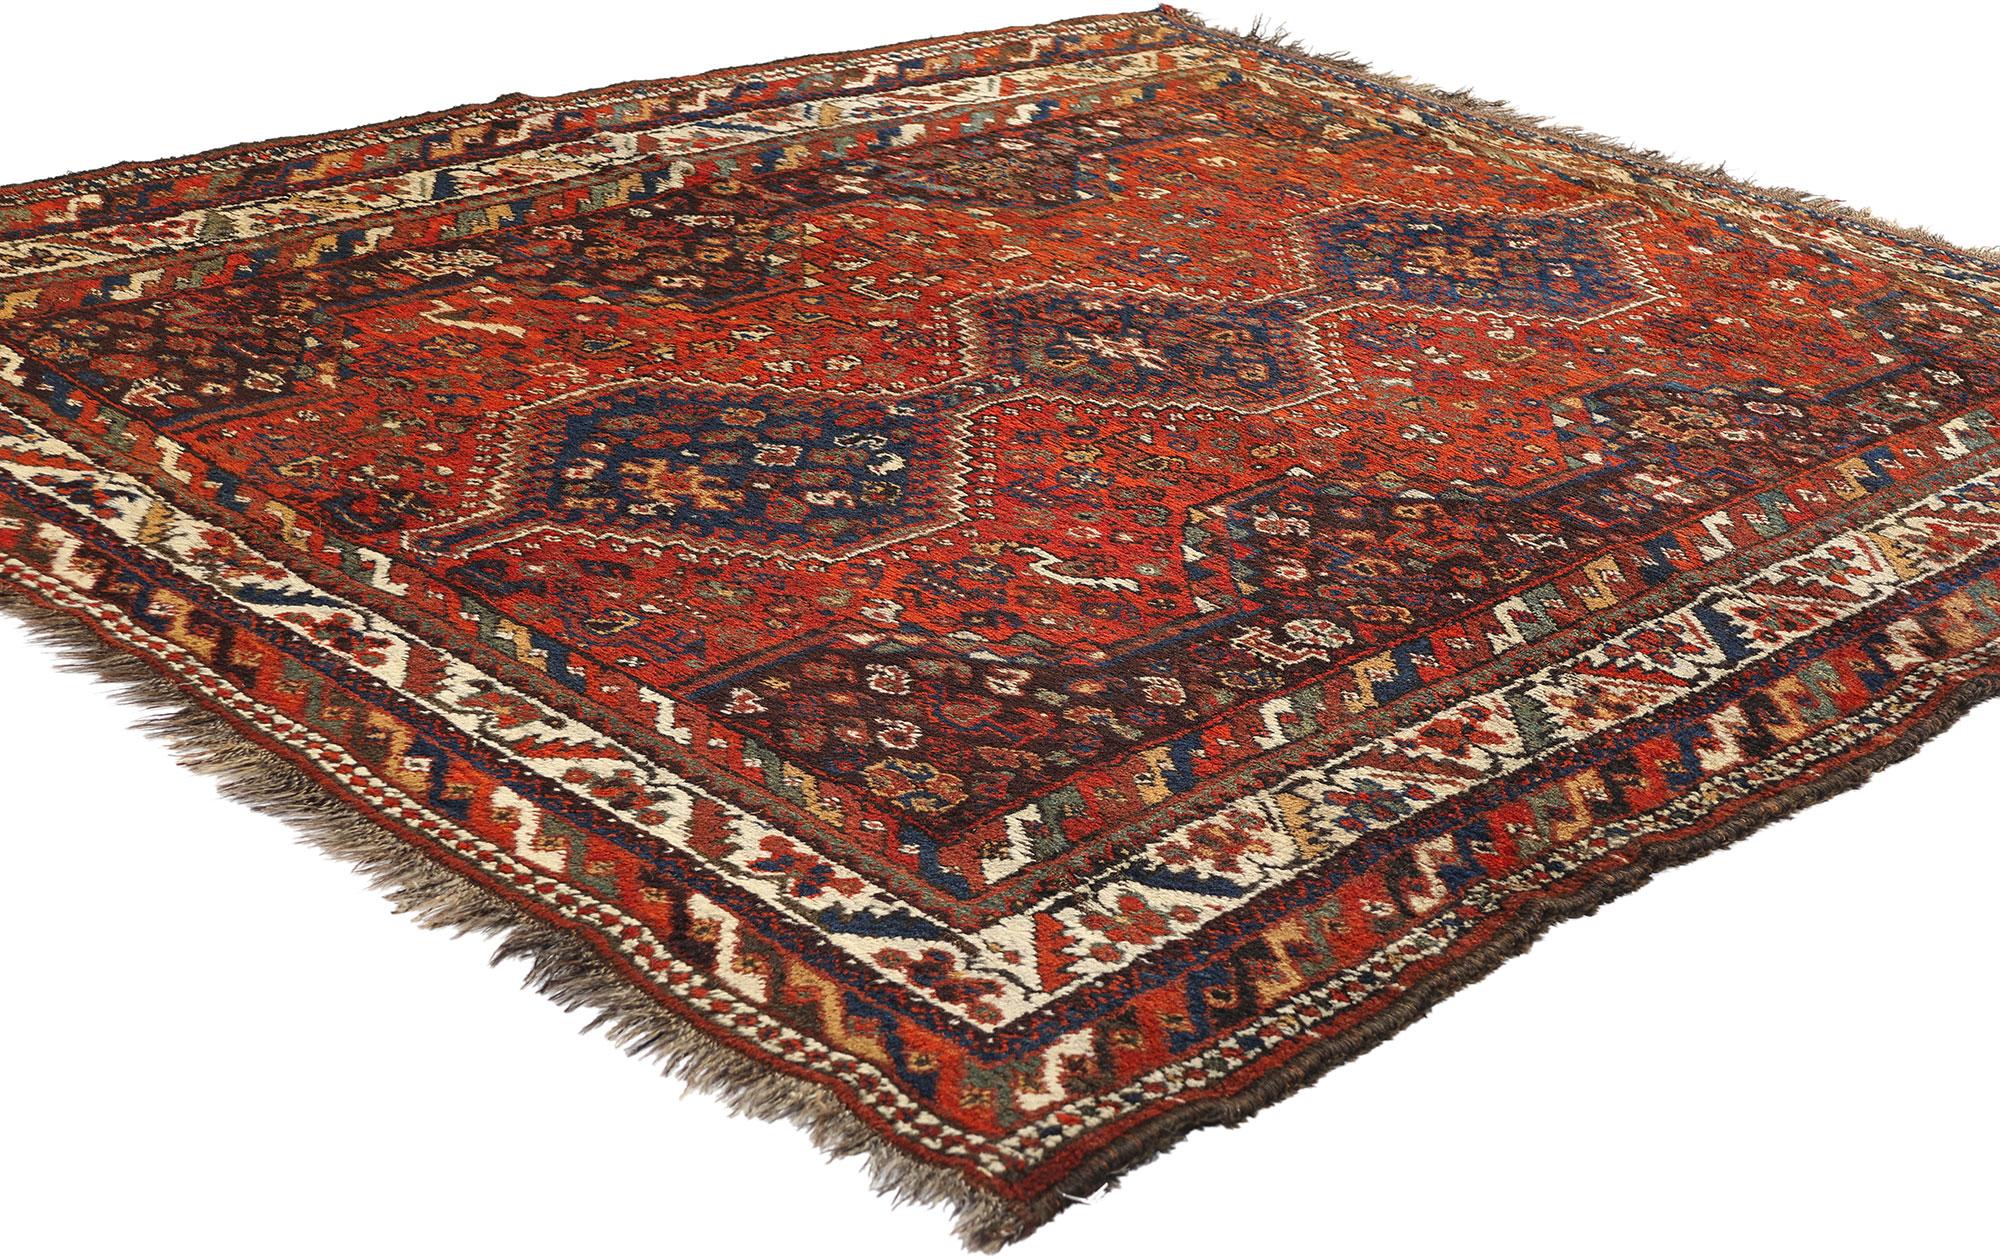 78155 Antiker persischer Shiraz-Teppich, 05'06 x 06'05. Persische Shiraz-Teppiche aus den Dörfern rund um die historische Stadt Shiraz in der iranischen Provinz Fars verkörpern die Essenz der Stammeskunst und des rustikalen Reizes. Diese Teppiche